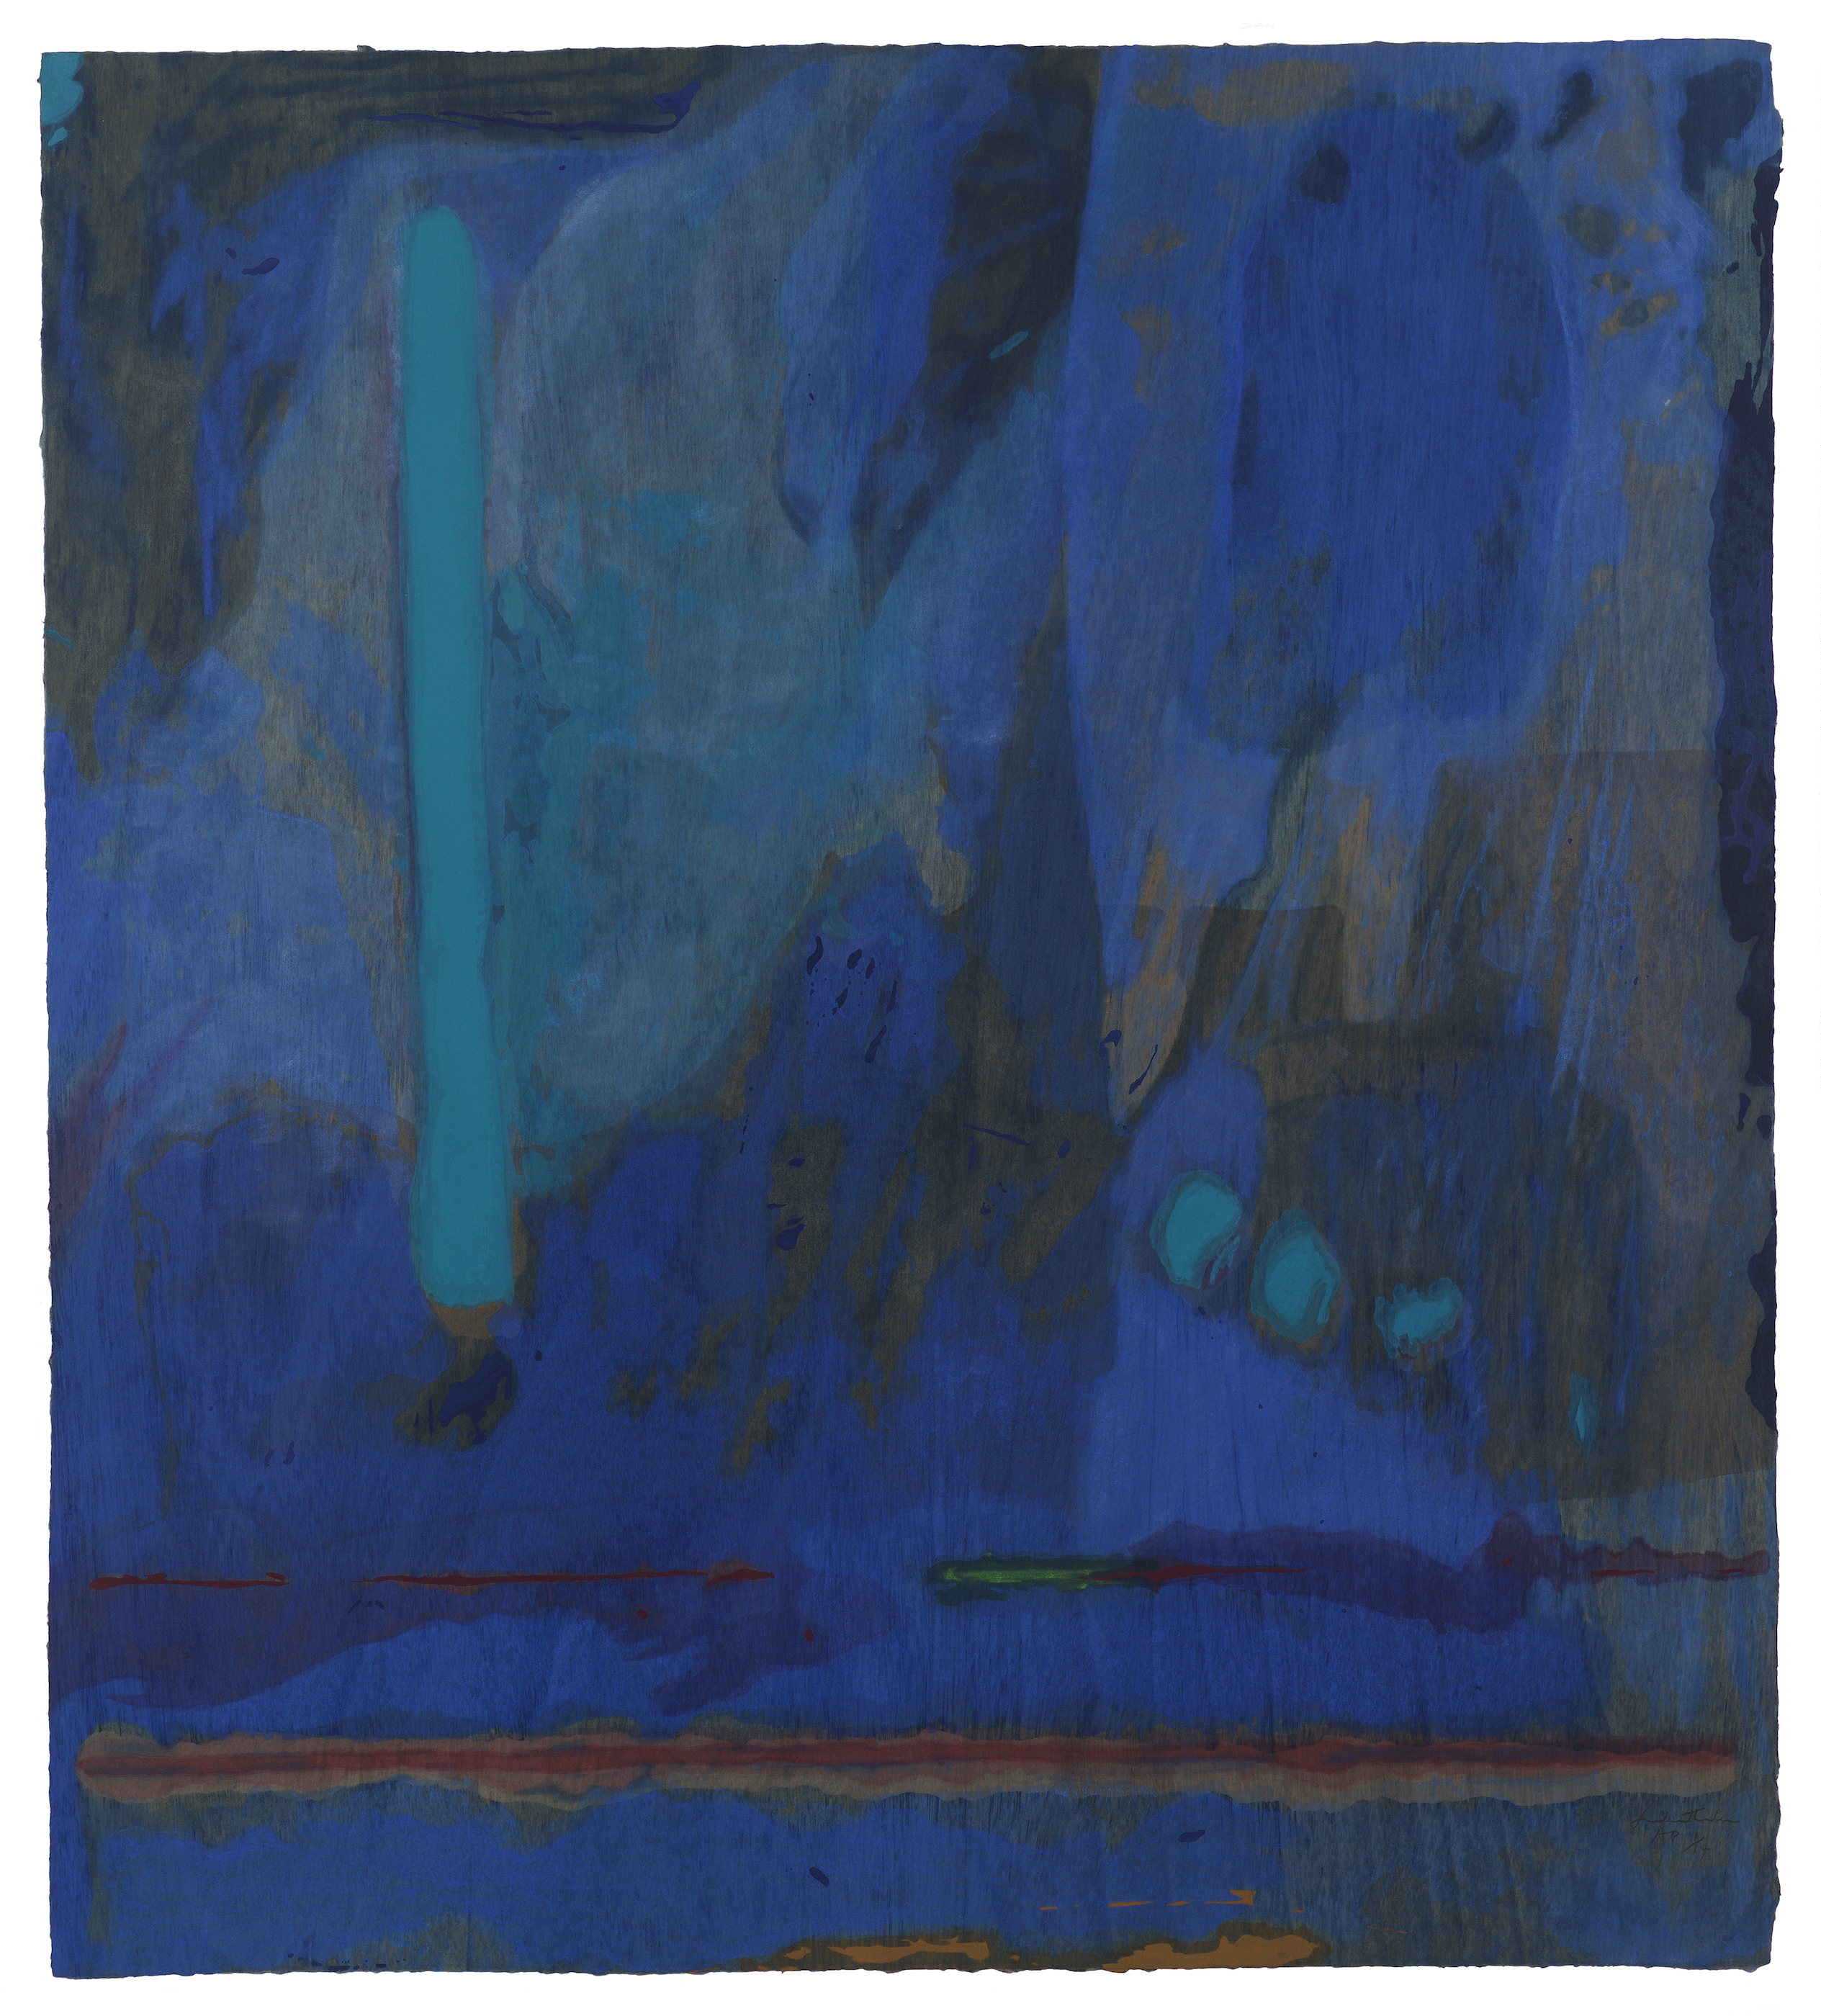 Приче о Генџију I by Helen Frankenthaler - 1998. - 106.7 x 119.4 cm 